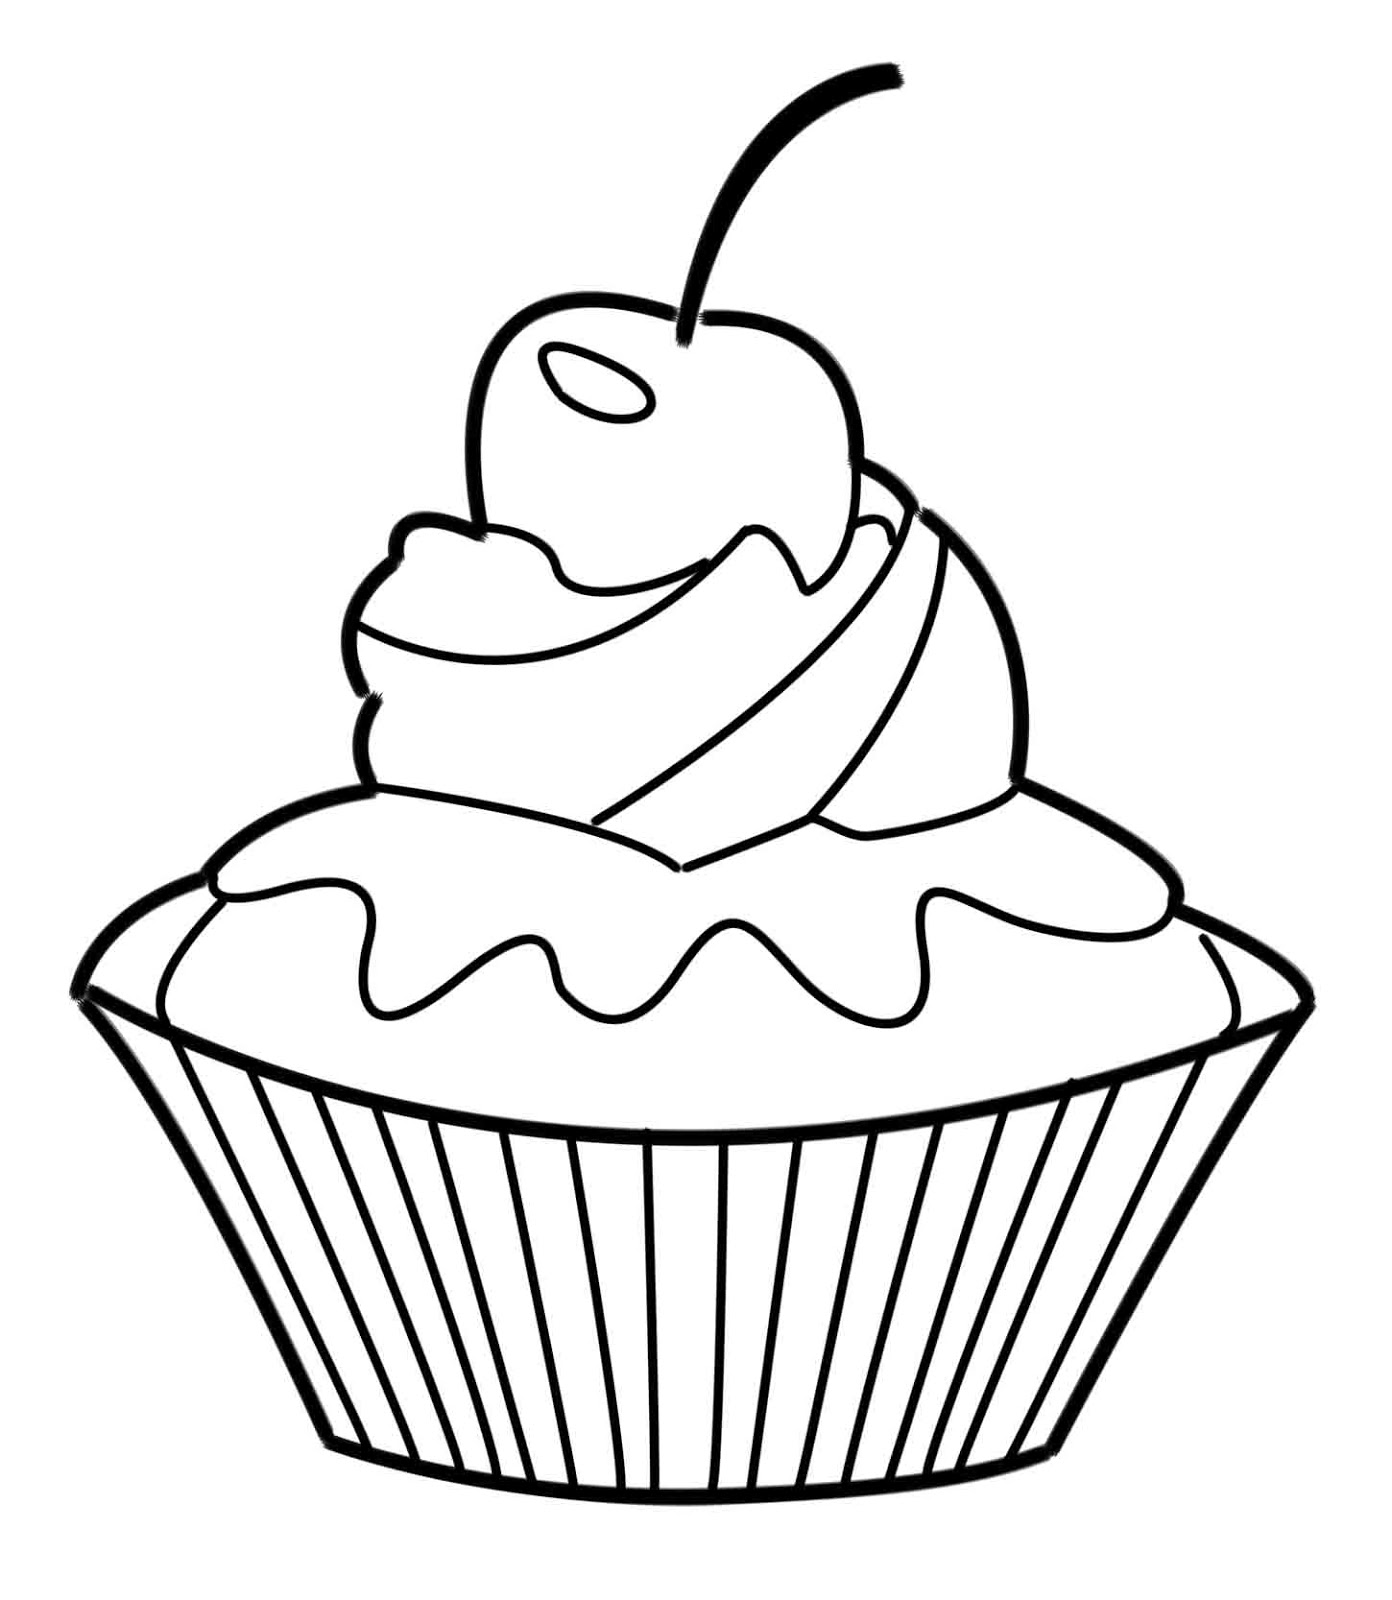 Page de coloriage grand format   imprimer un petit cupcake avec une cerise sur le dessus